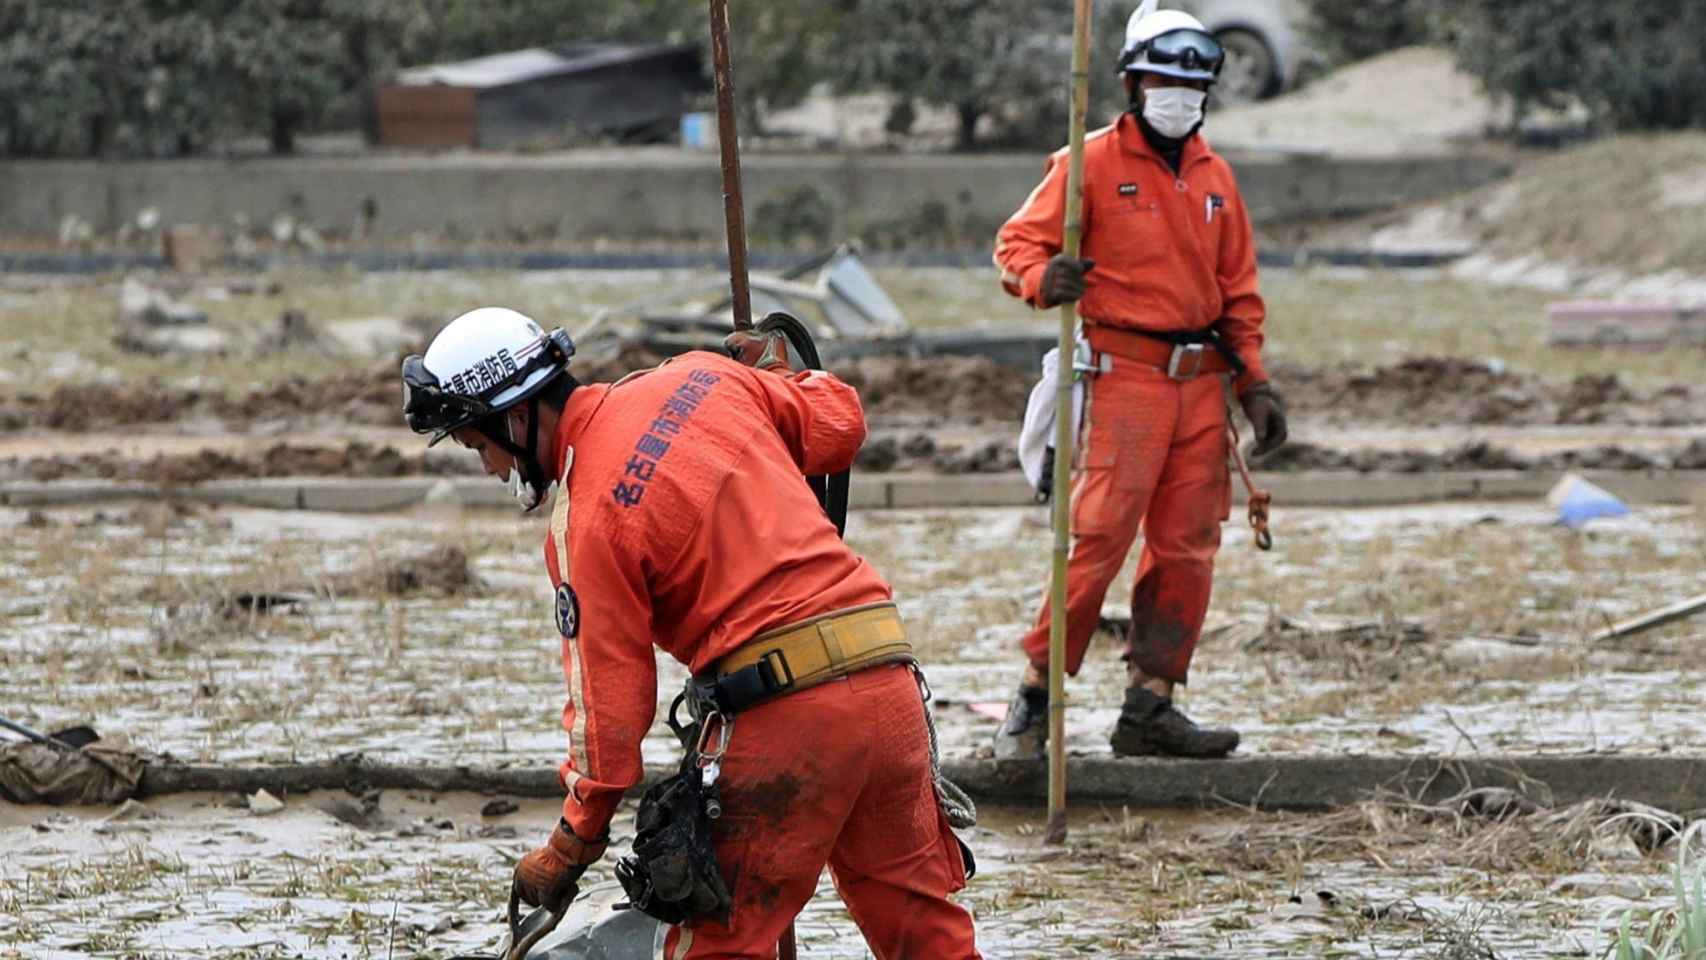 Miembros de los servicios de rescate buscan personas desaparecidas en una zona cubierta de lodo en la localidad de Kurashiki, al oeste de Japón.